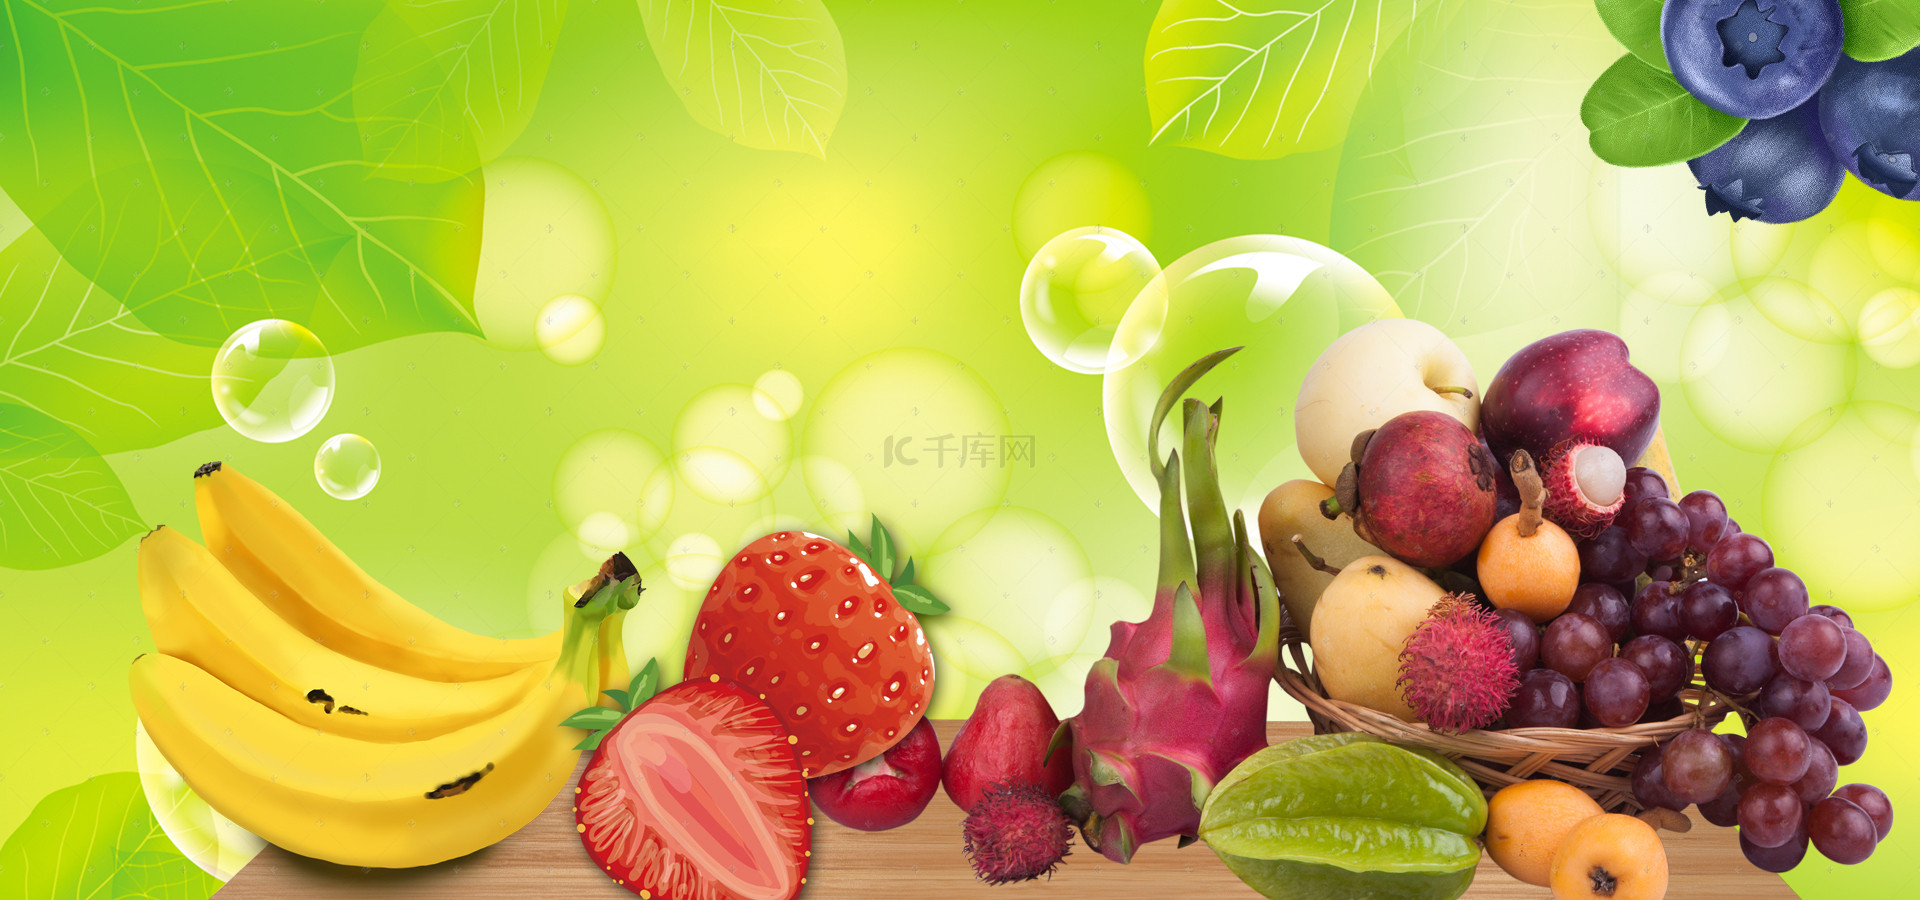 蔬菜水果背景背景图片_水果超市海报背景素材